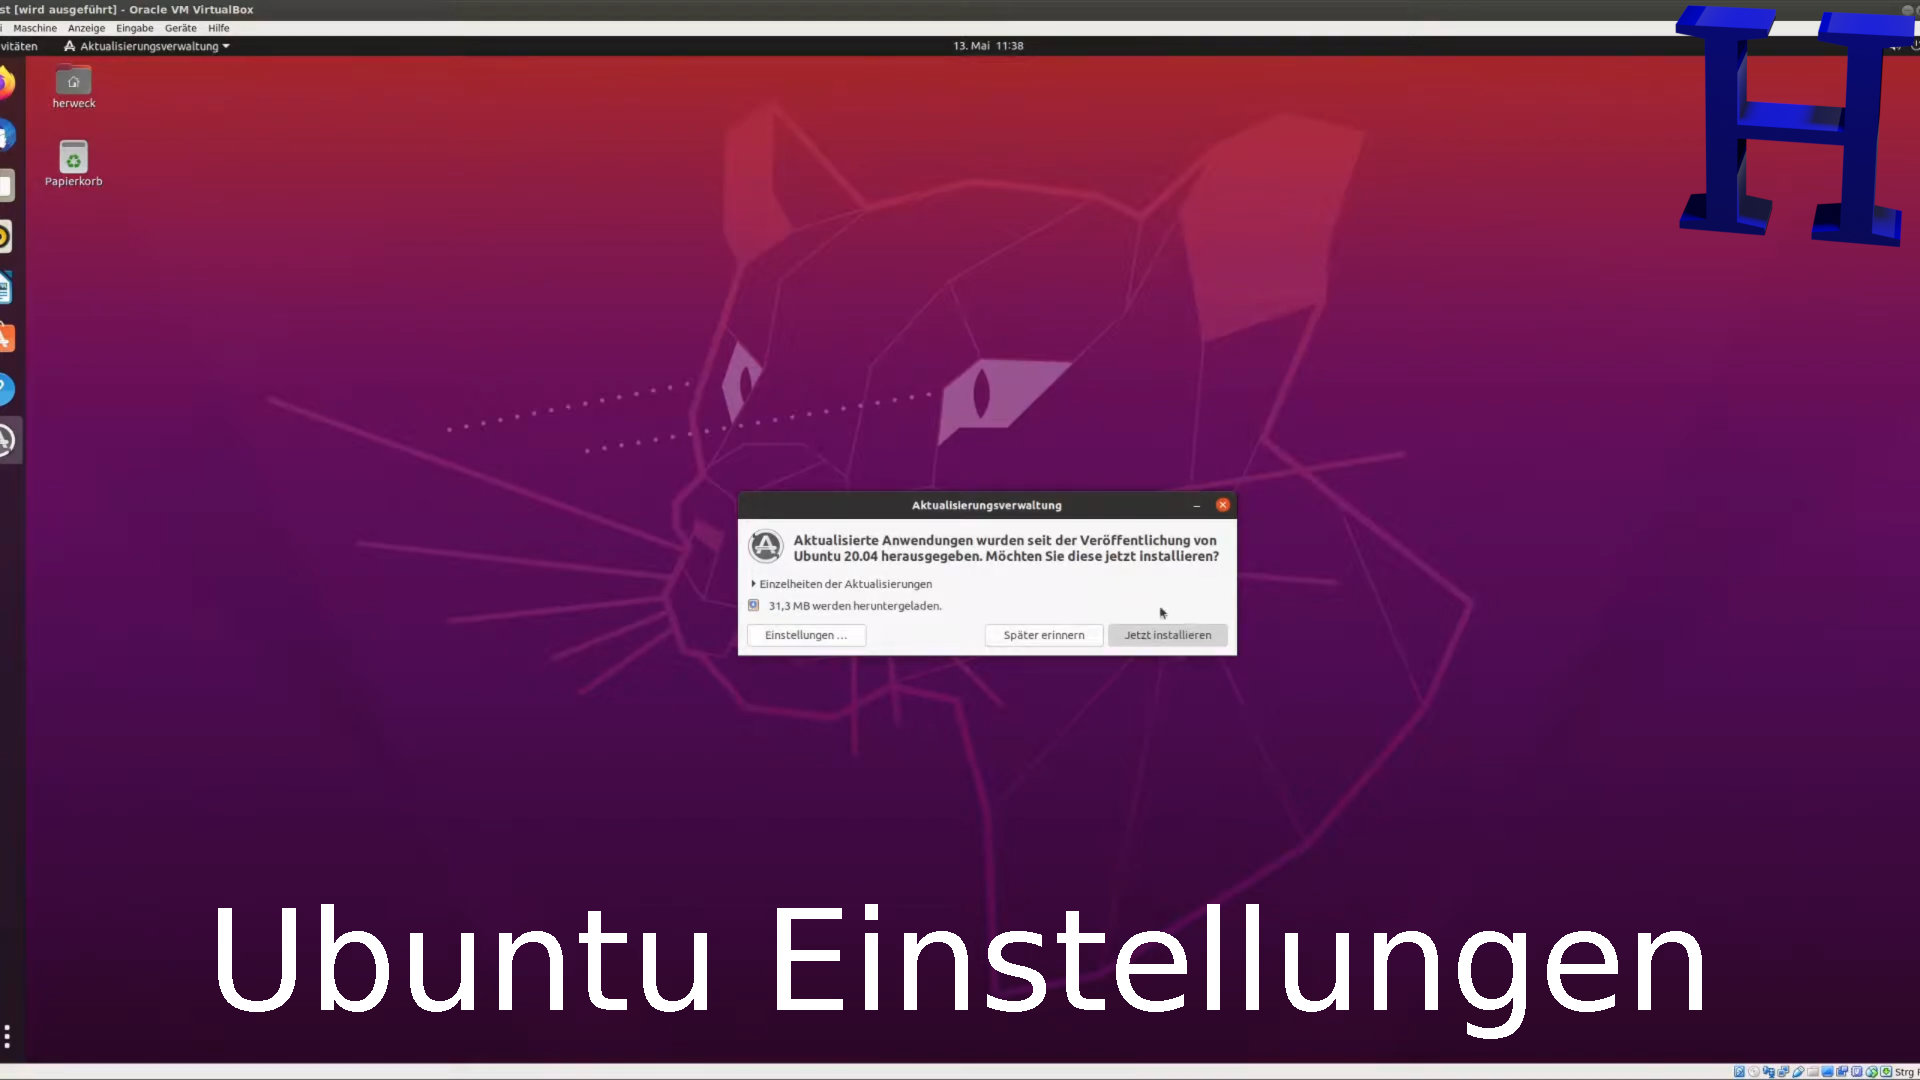 Ubuntu Einstellungen